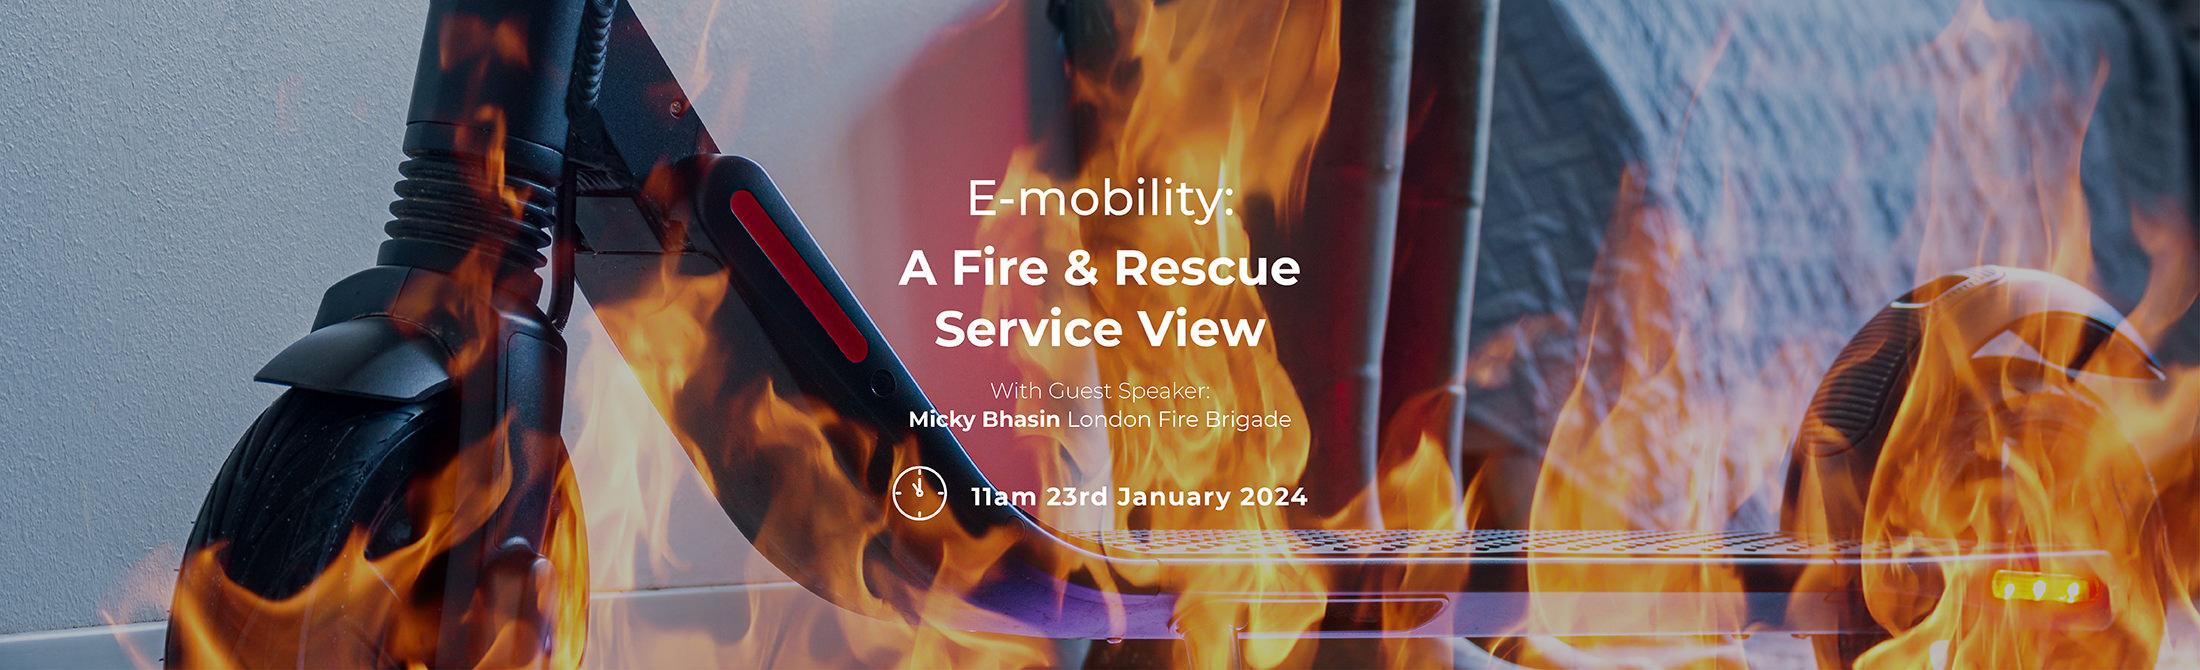 E-mobility fire risks